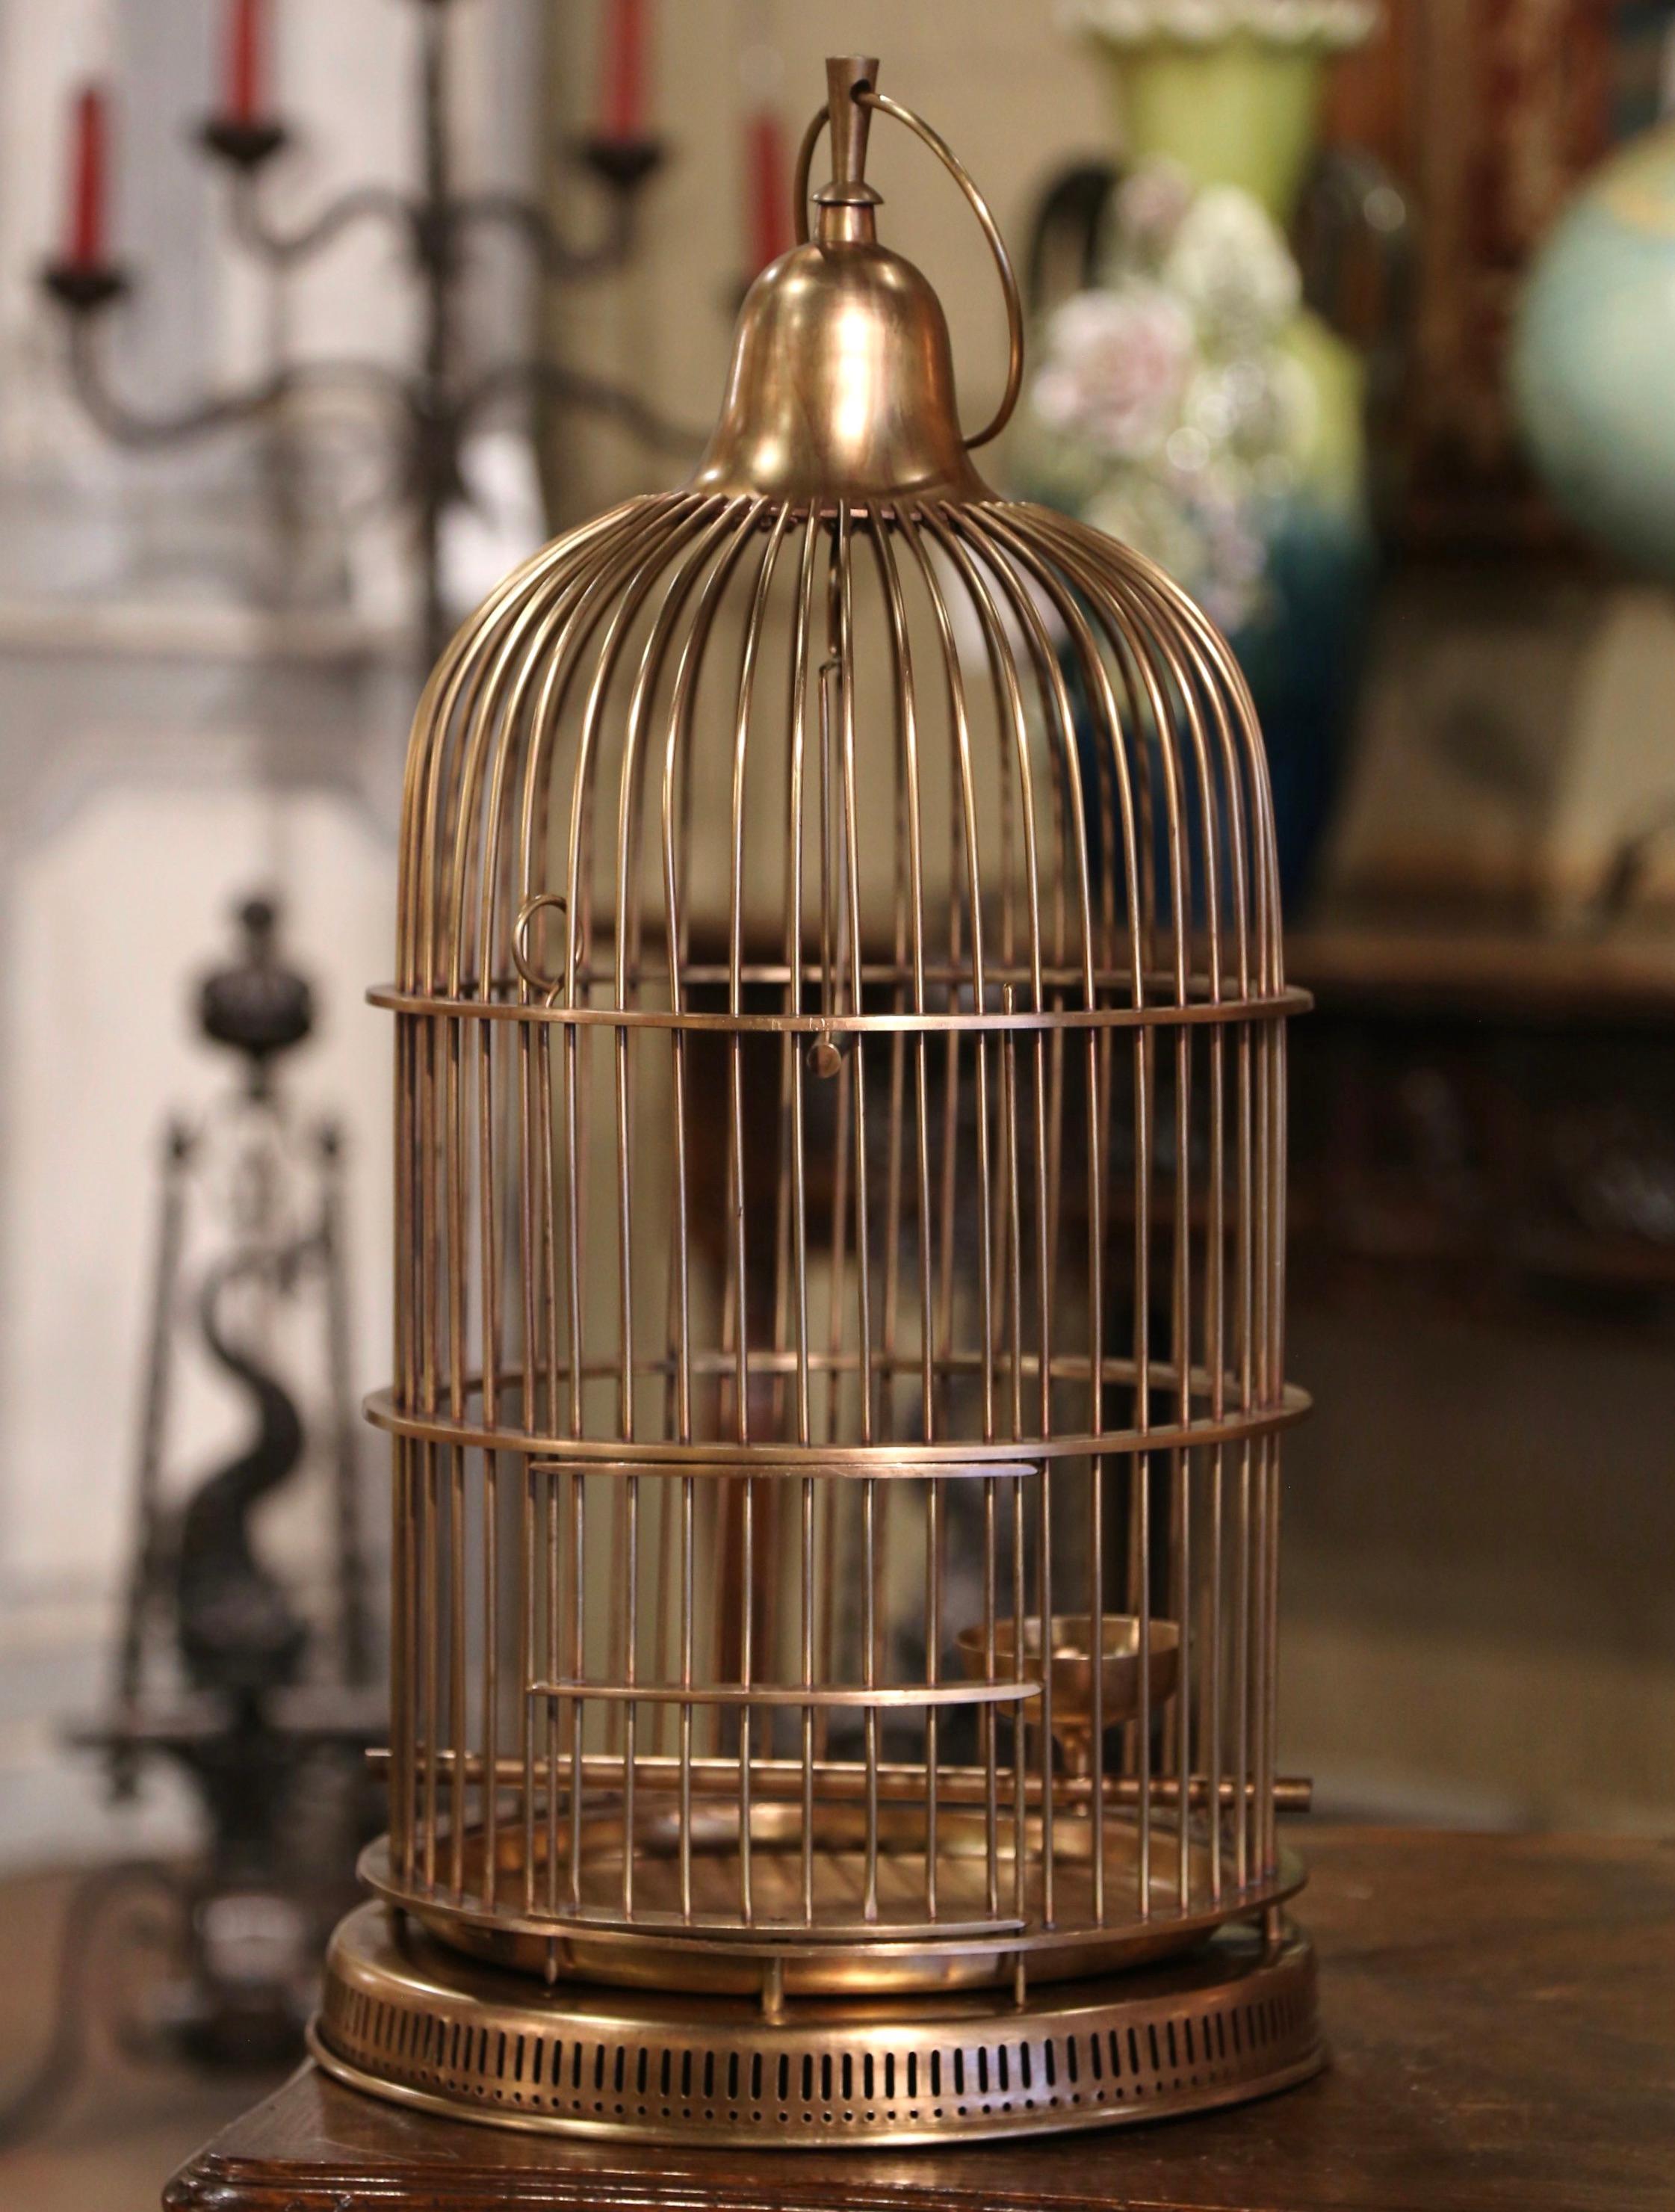 Dekorieren Sie Ihr Zuhause mit diesem skurrilen antiken Vogelkäfig. Dieser um 1920 in Frankreich gefertigte Käfig aus Messing hat eine zylindrische Form und eine runde Kuppel, die mit einem dekorativen Aufhängehaken verziert ist. Der Käfig verfügt